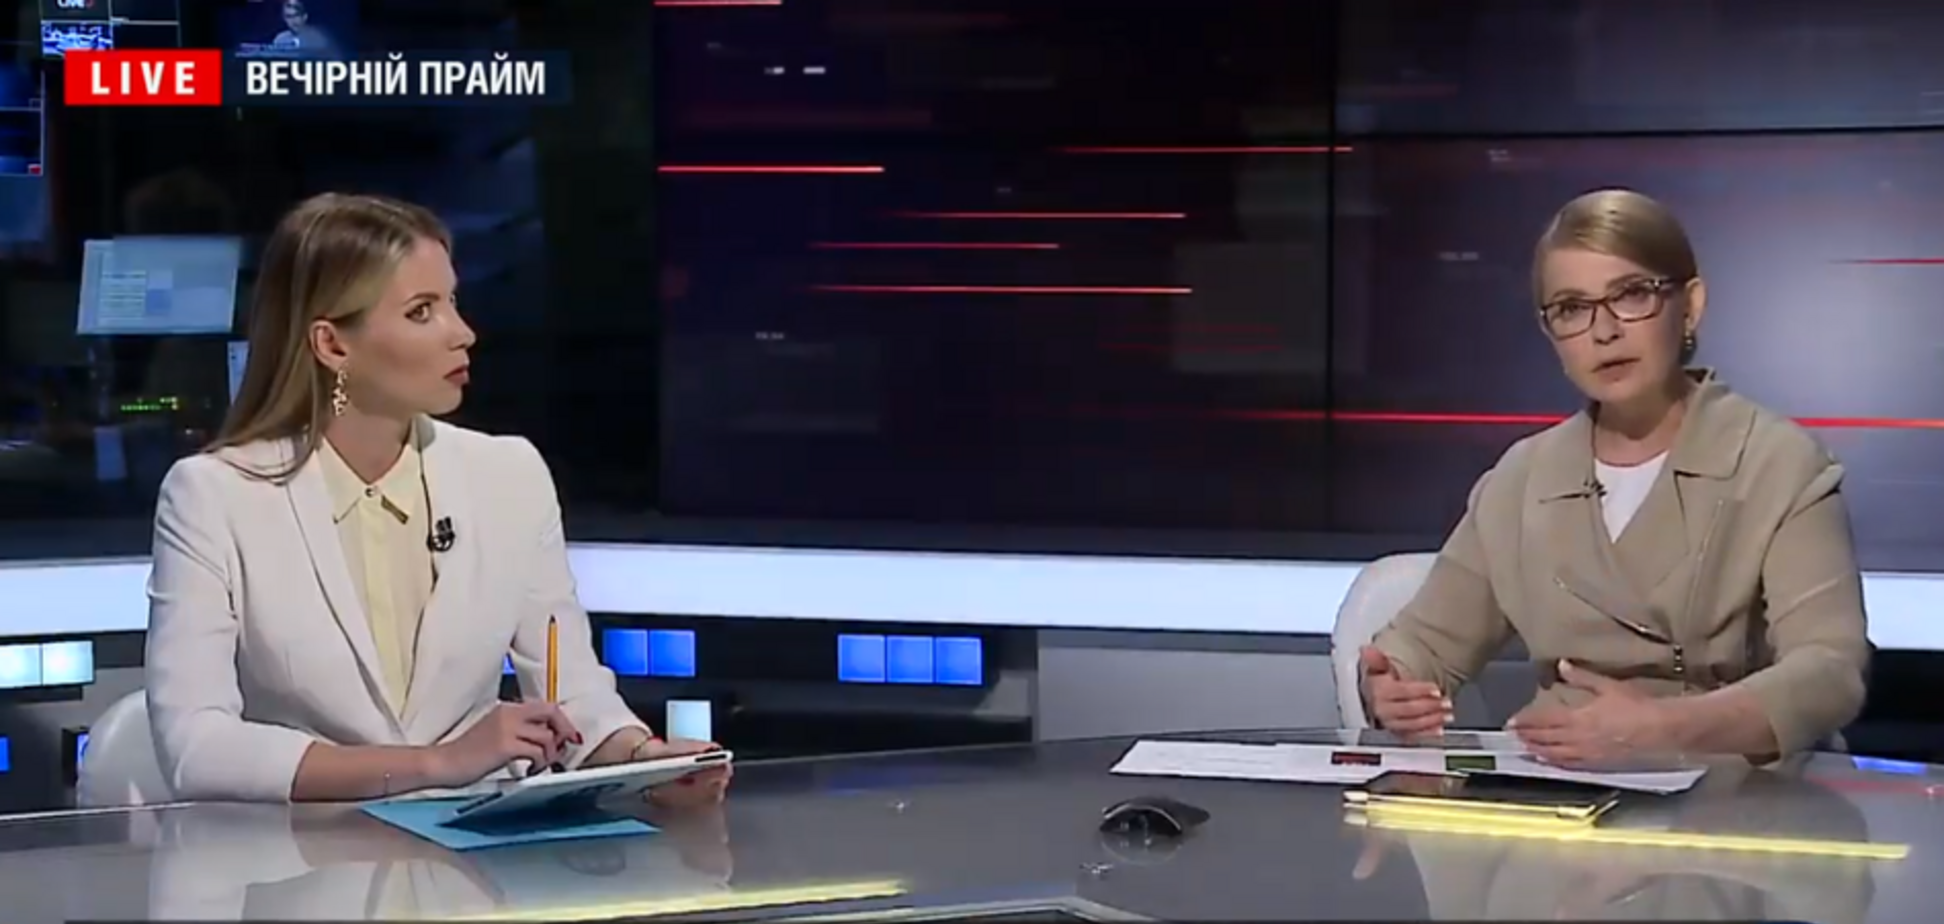 Говорили об изменениях – Тимошенко о встрече с президентом